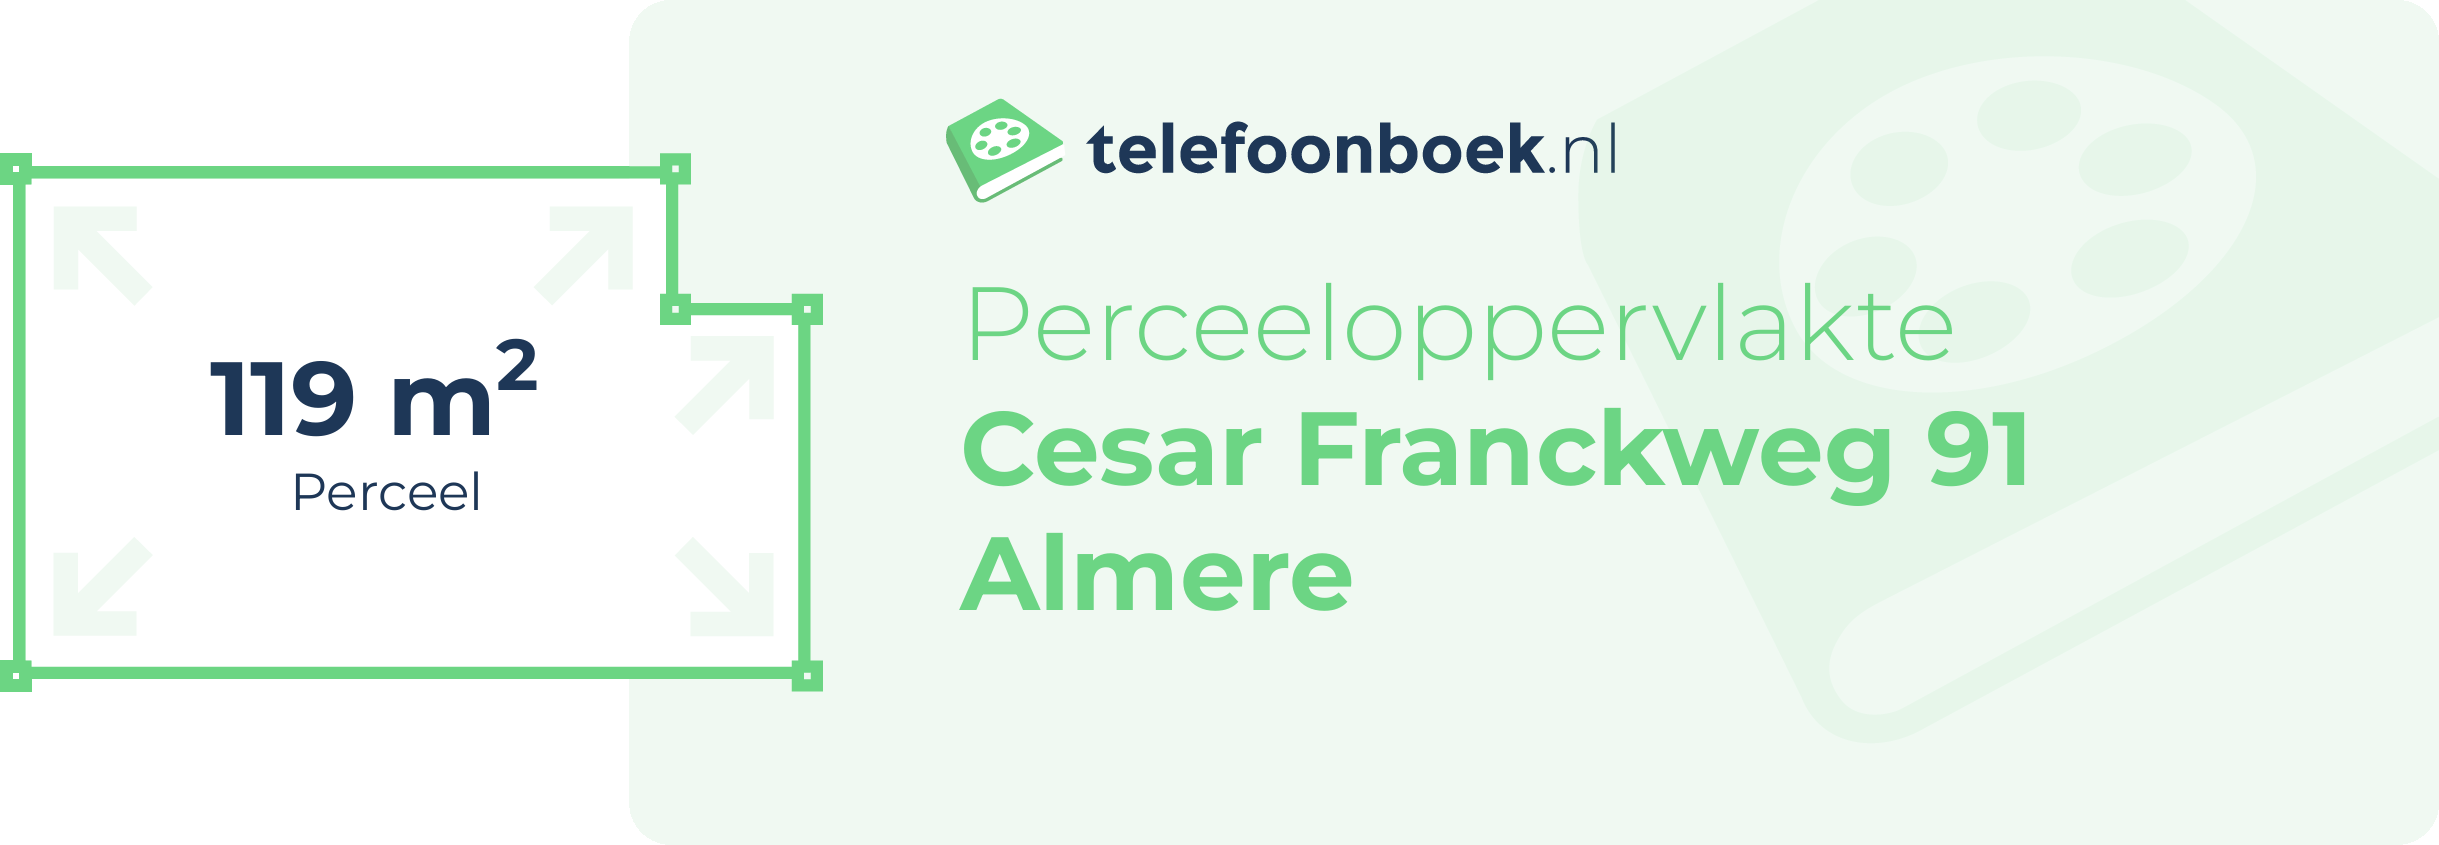 Perceeloppervlakte Cesar Franckweg 91 Almere